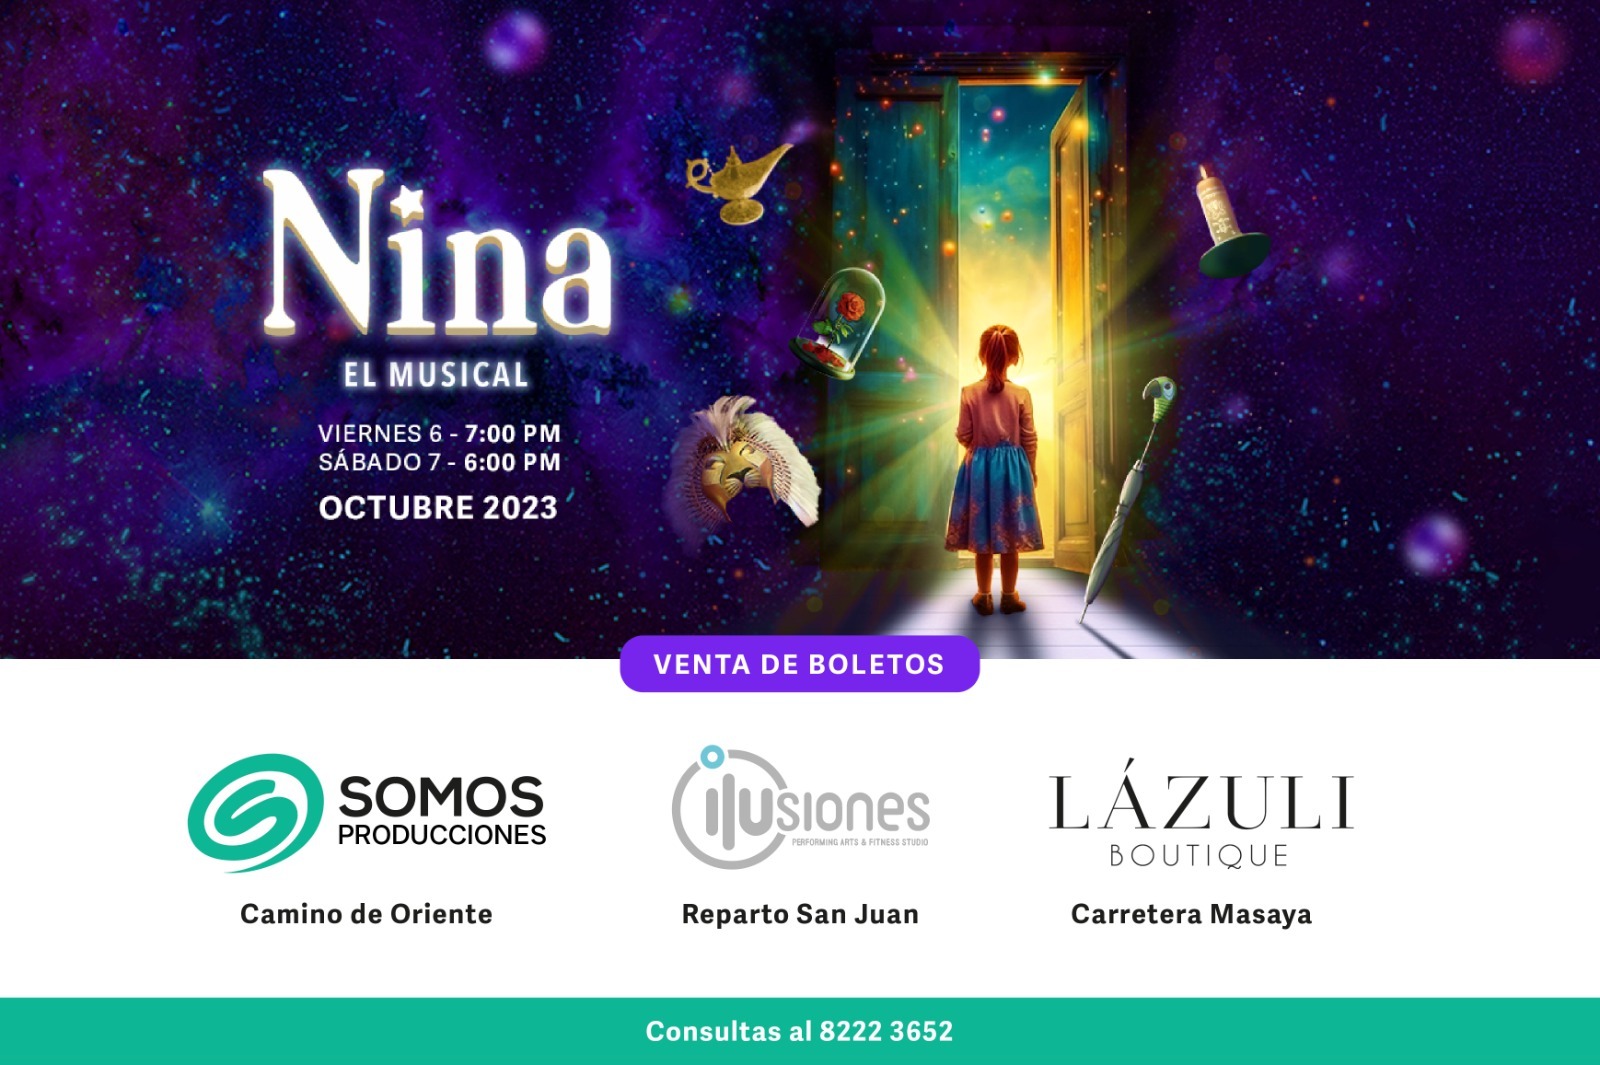 Nina, El Musical, una obra de teatro, danza y canto que unirá a la familia